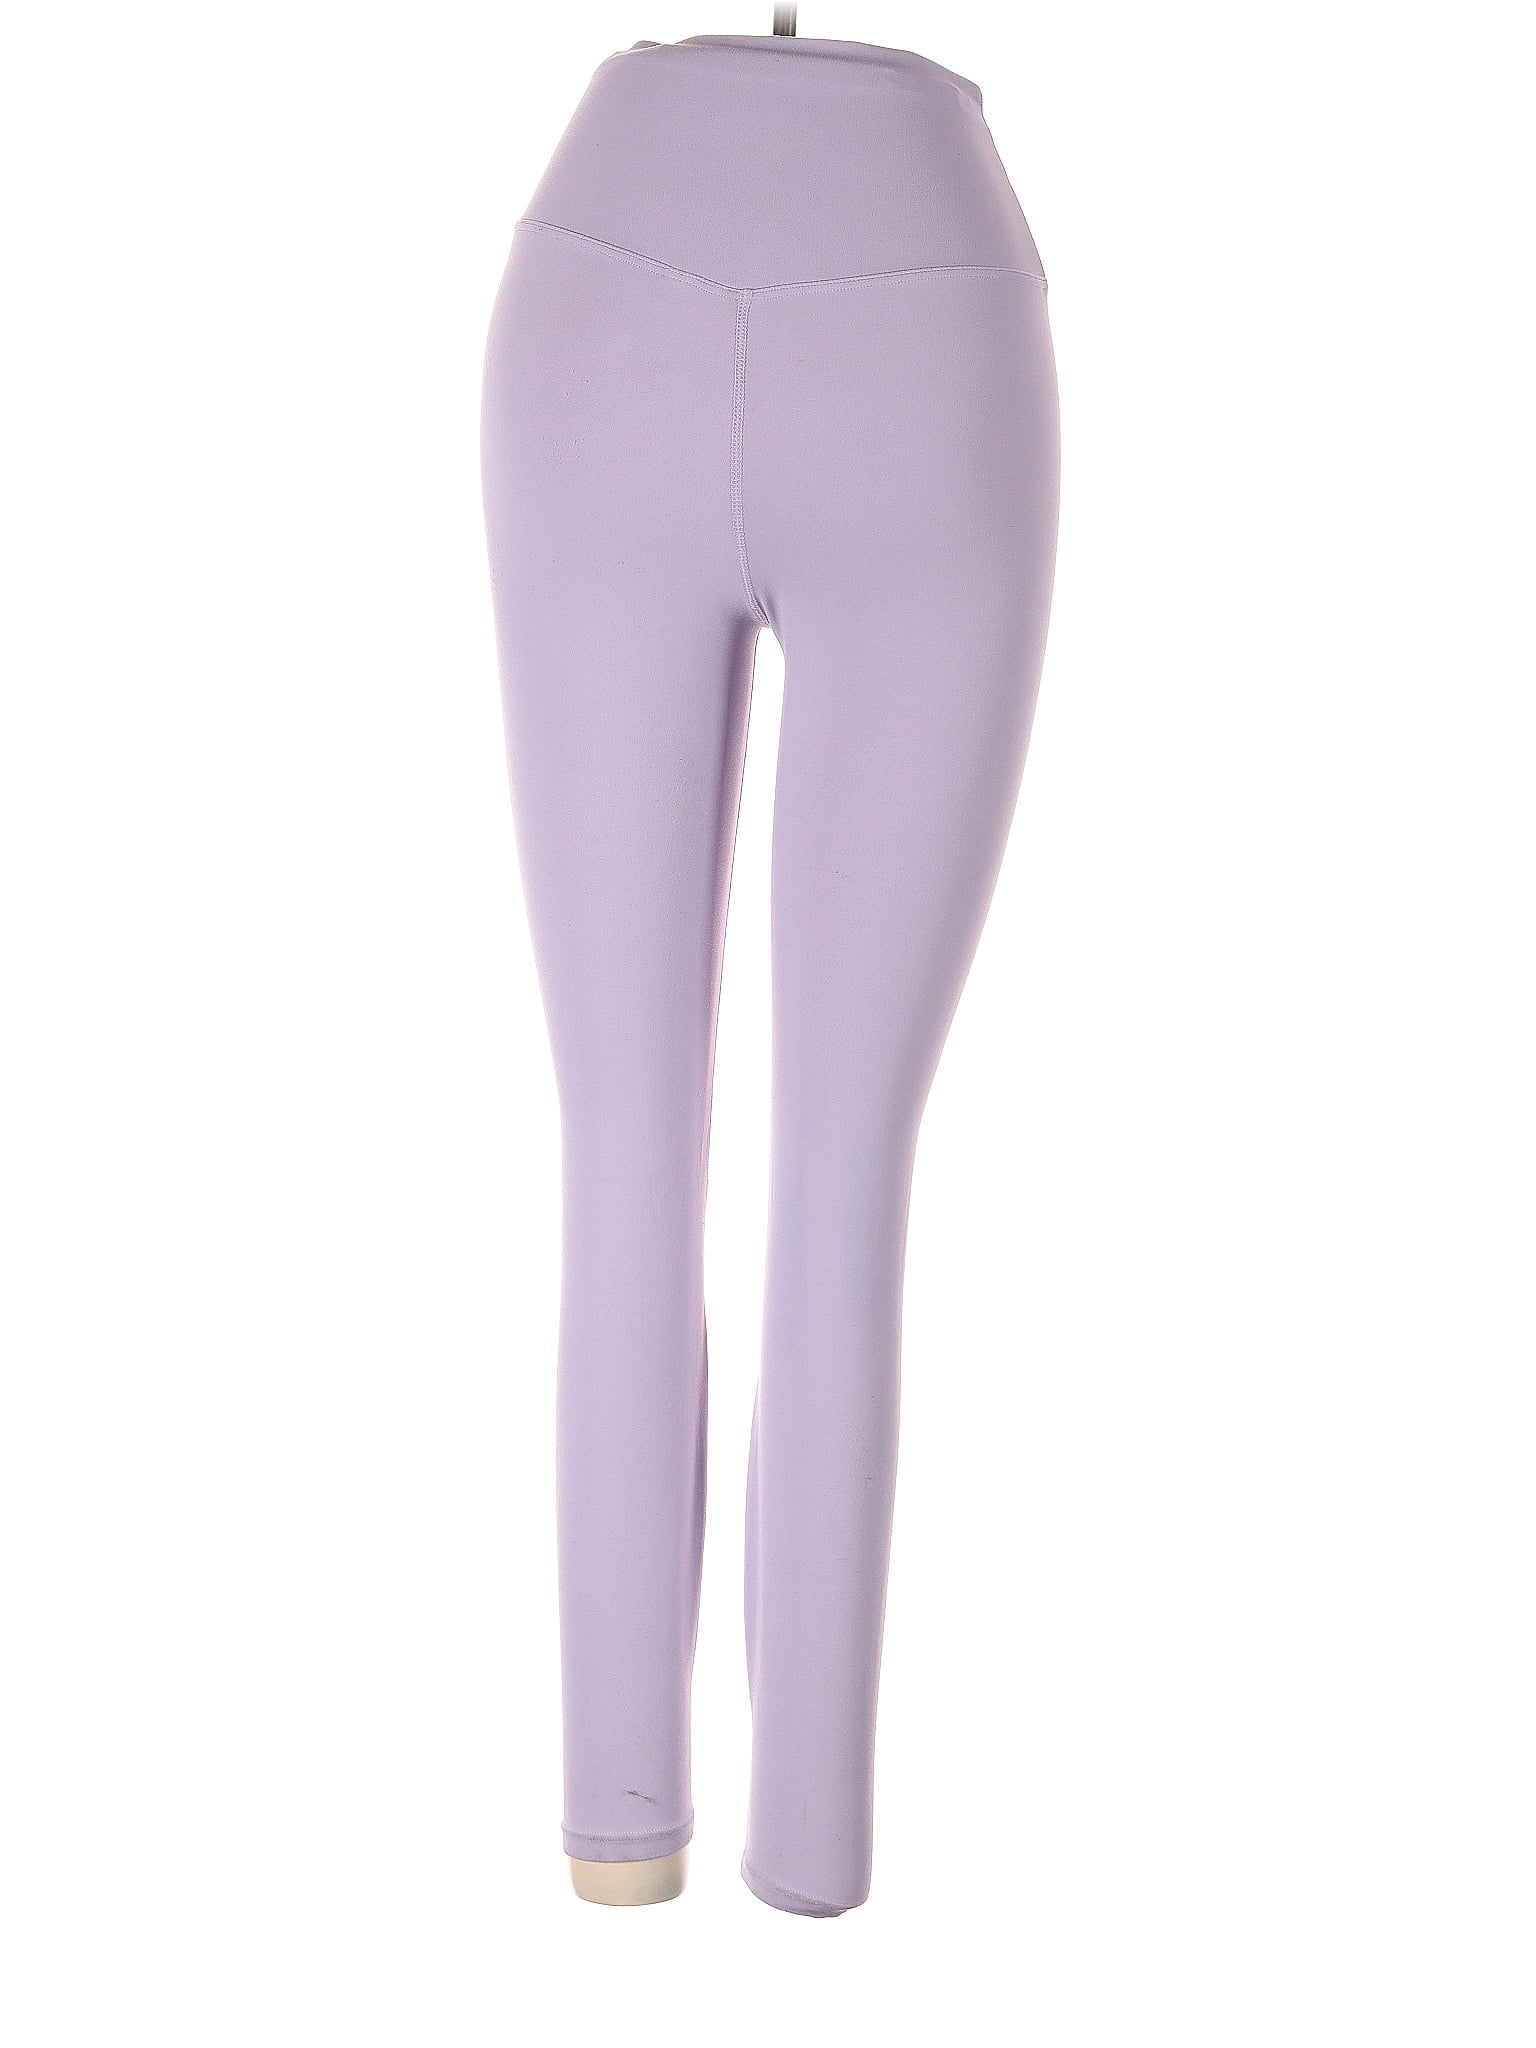 Lululemon Athletica Multi Color Purple Active Pants Size 20 (Plus) - 51%  off